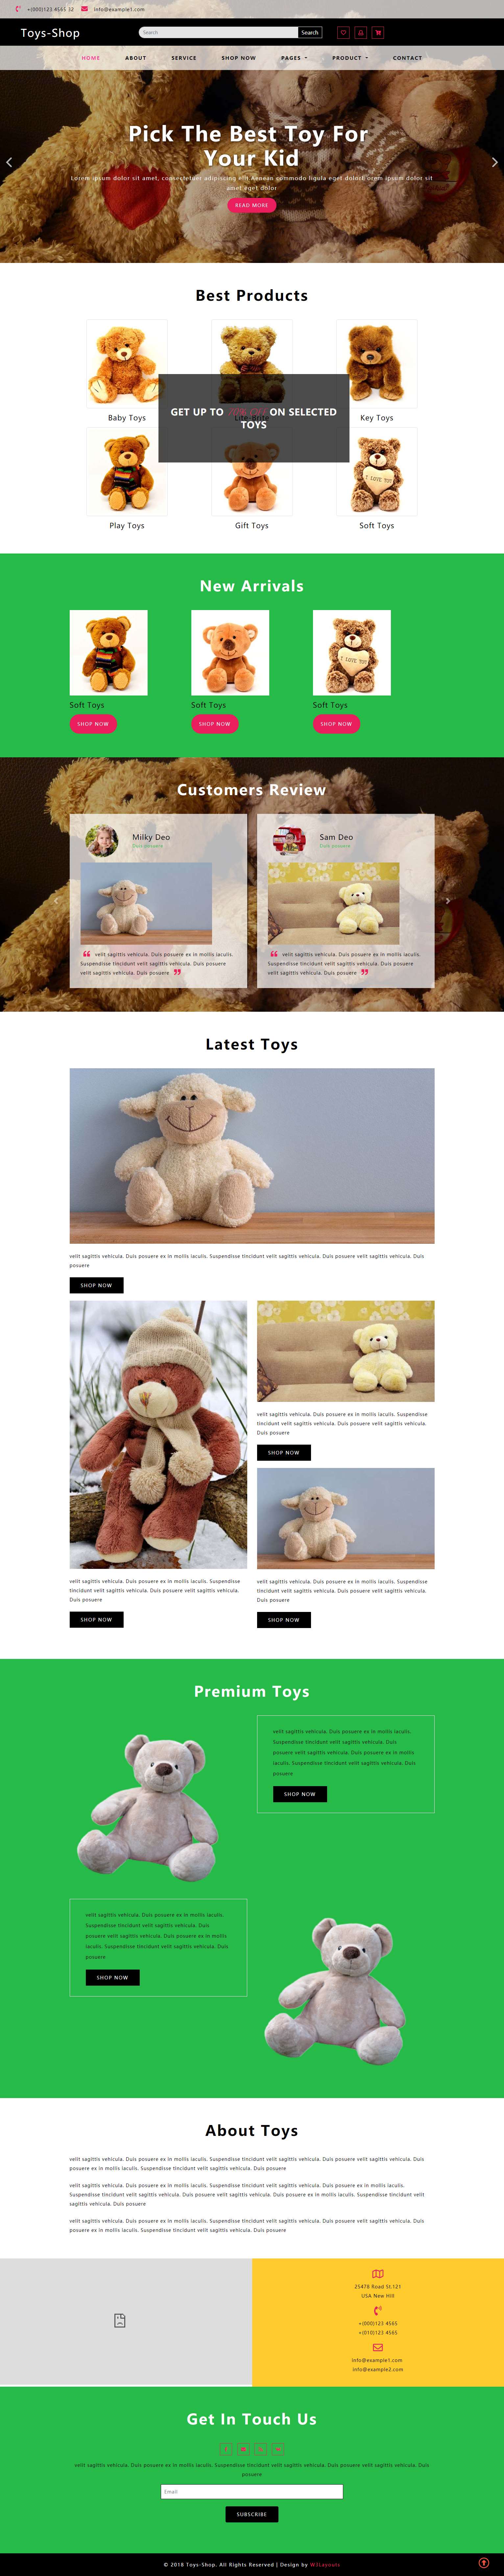 粉色简洁风格的毛绒玩具商城整站网站源码下载